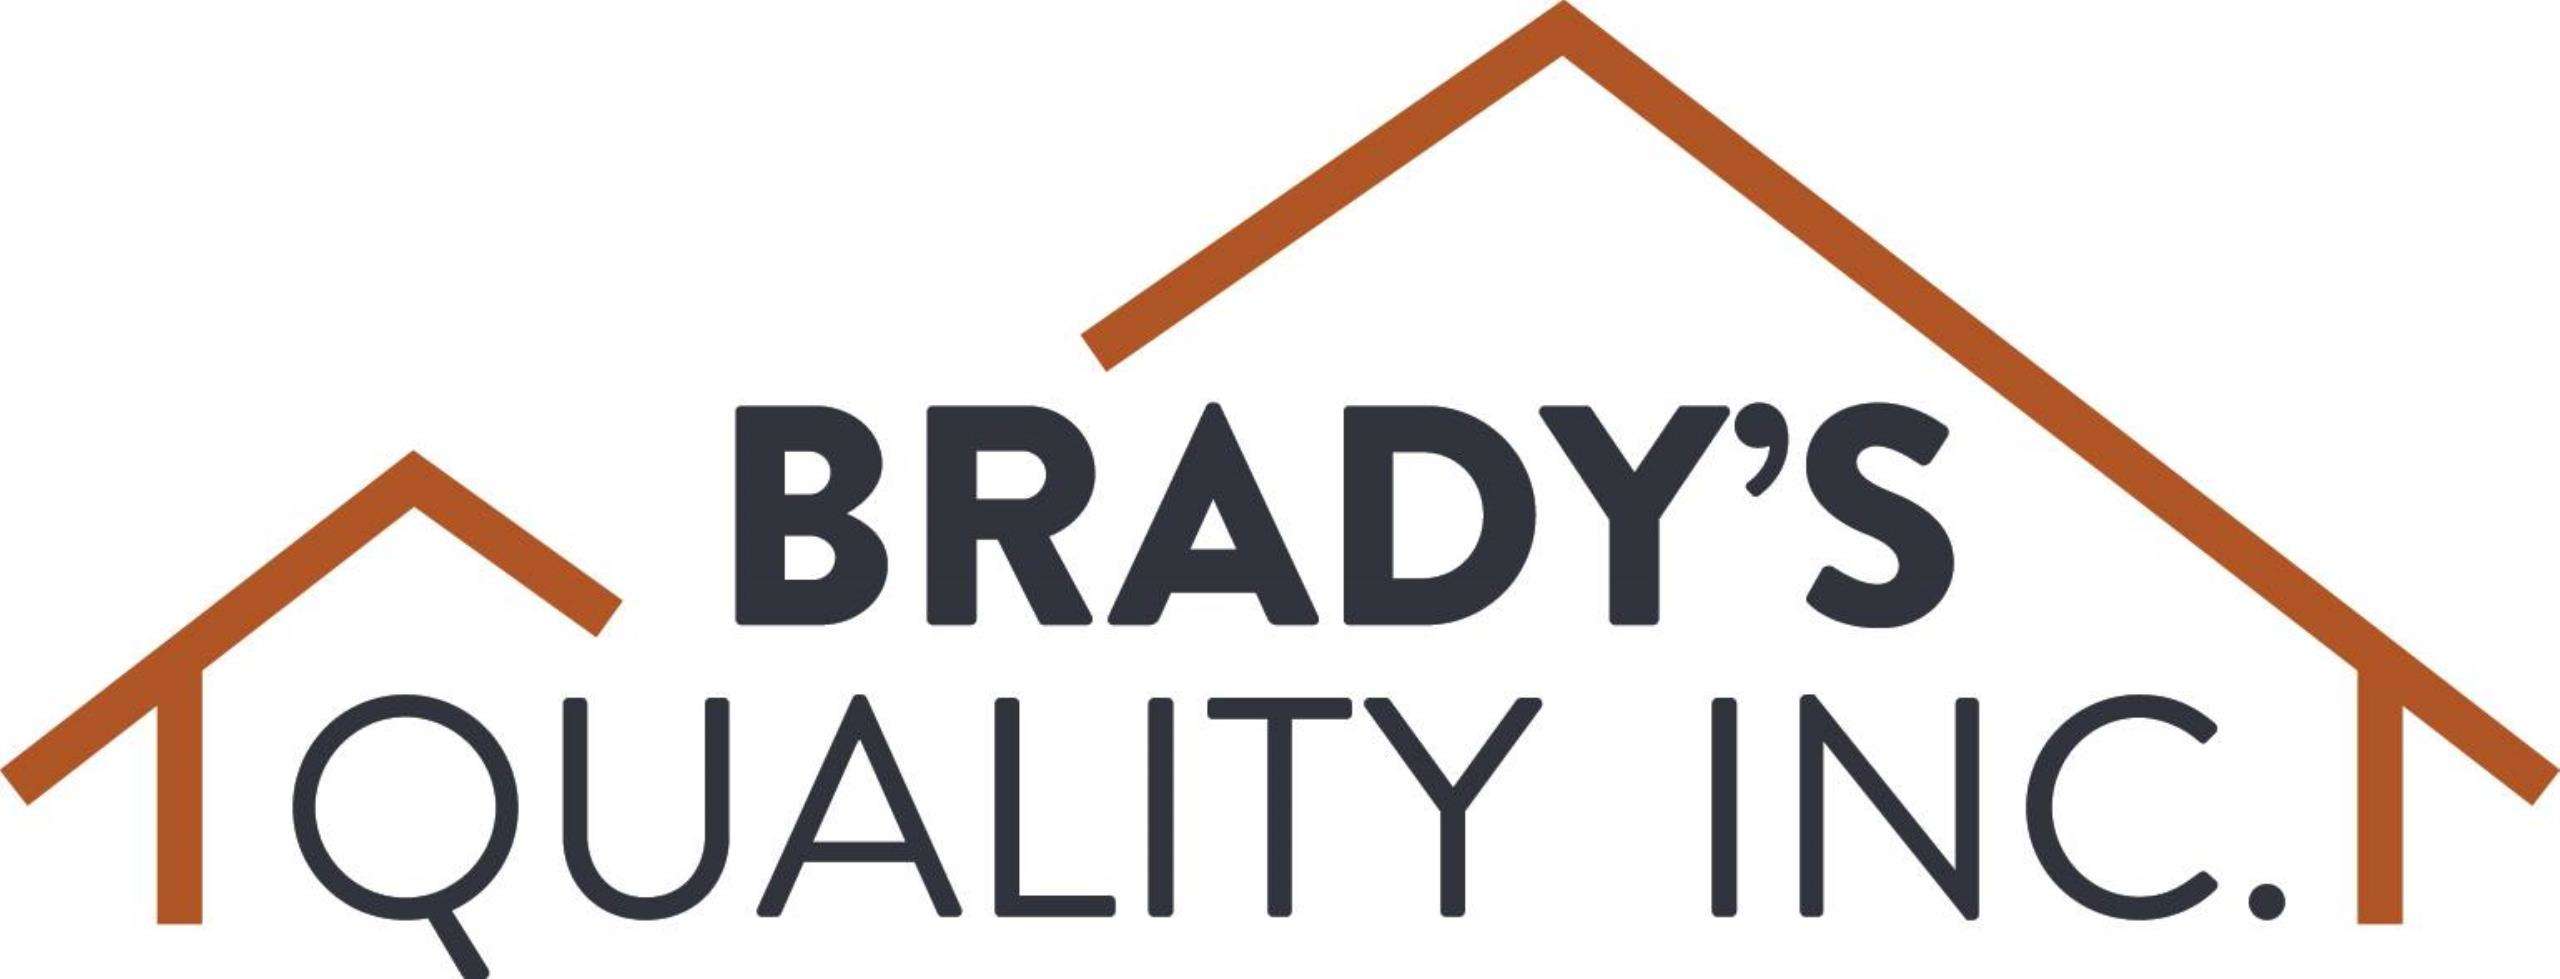 Brady's Quality Inc. Logo